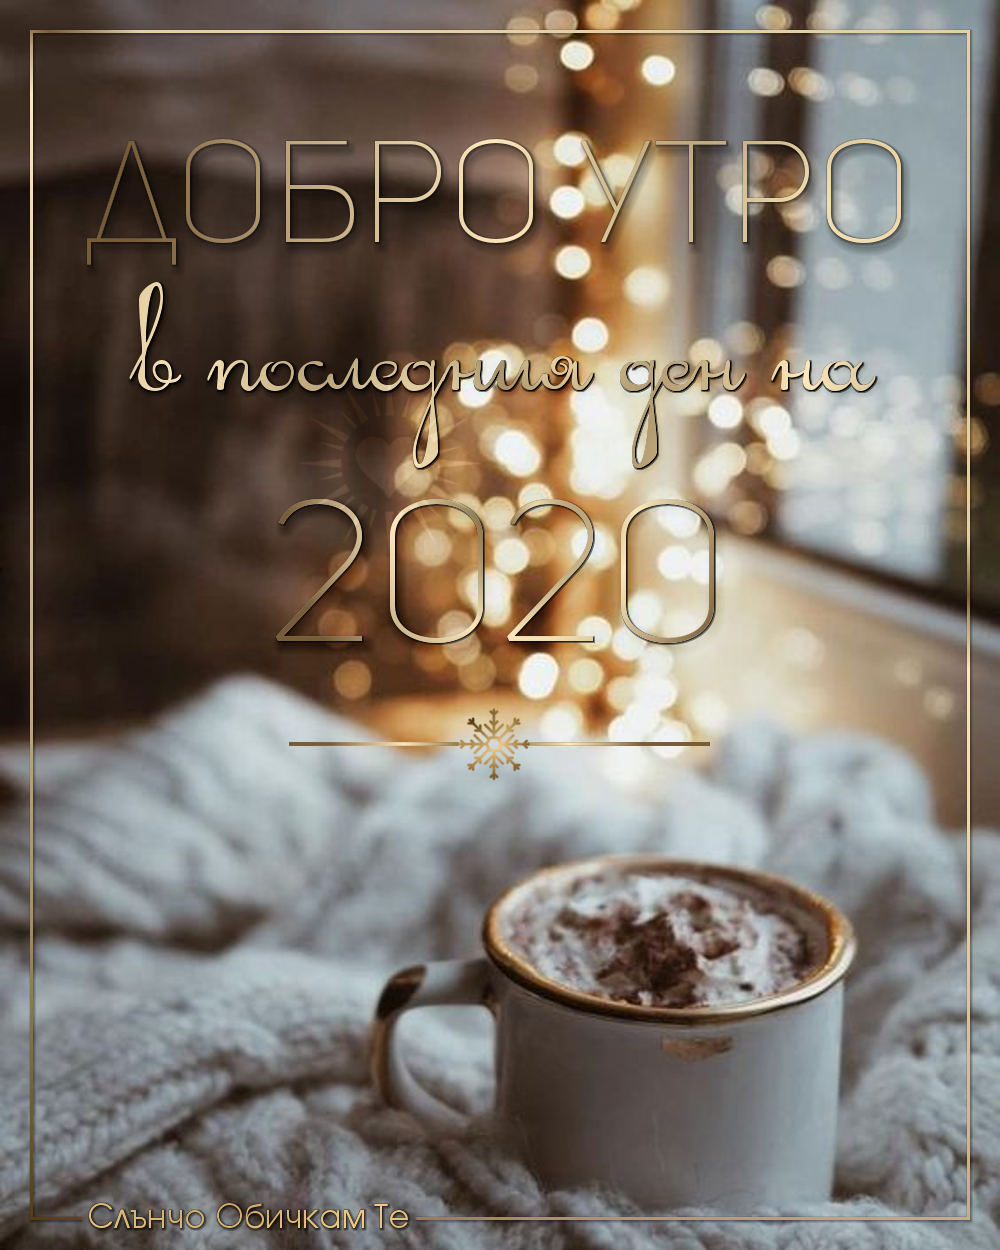 Добро утро в последния ден на 2020, добро утро на 31 декември 2020, картички за добро утро за нова година, честита нова година, пожелания за нова година, 2021